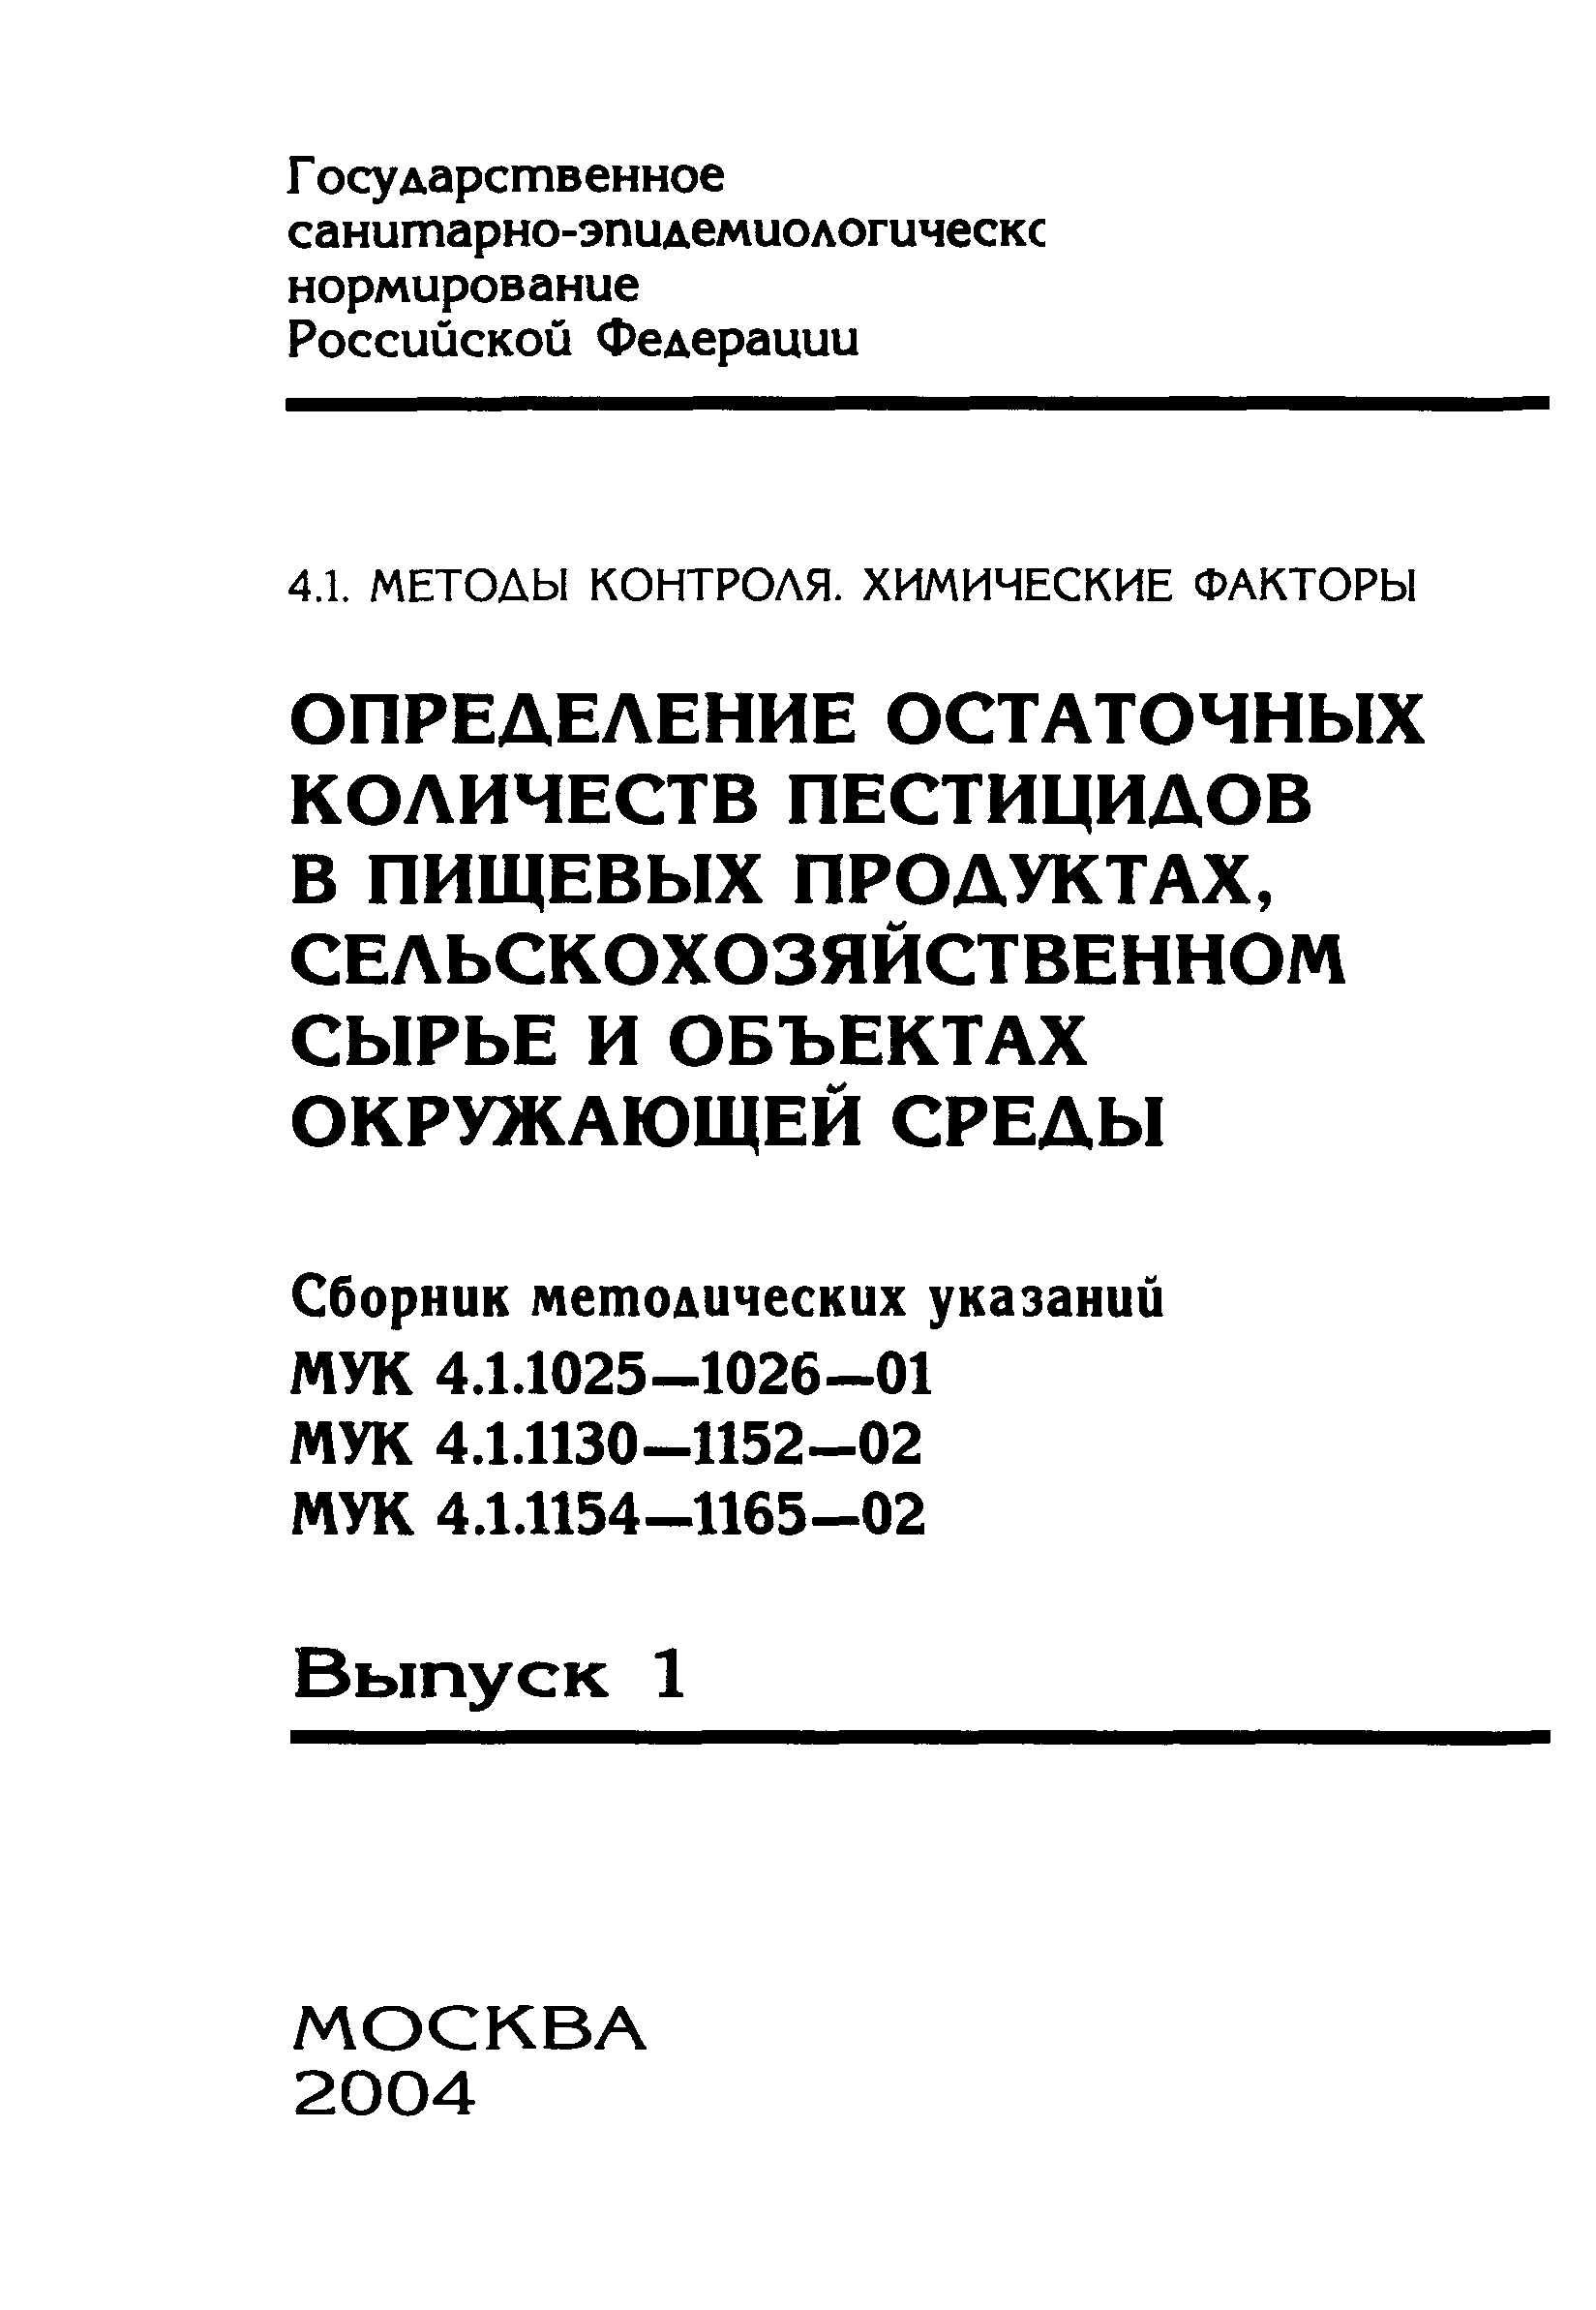 МУК 4.1.1152-02